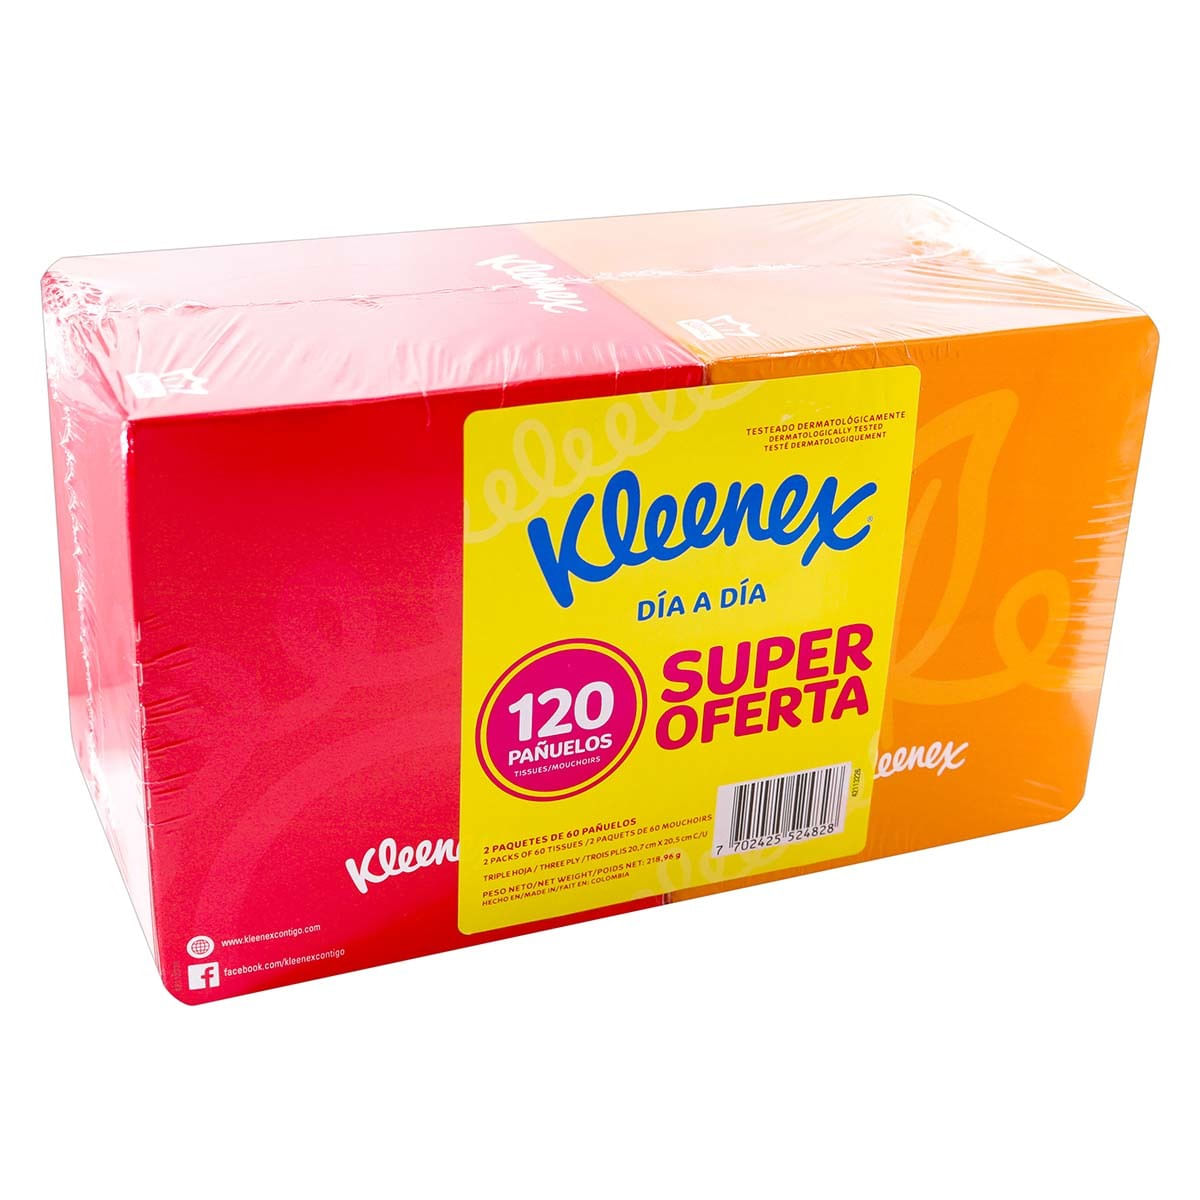 Pañuelos Kleenex Día a Día Cubo Caja x 60 Unidades Paquete x 2 Uds